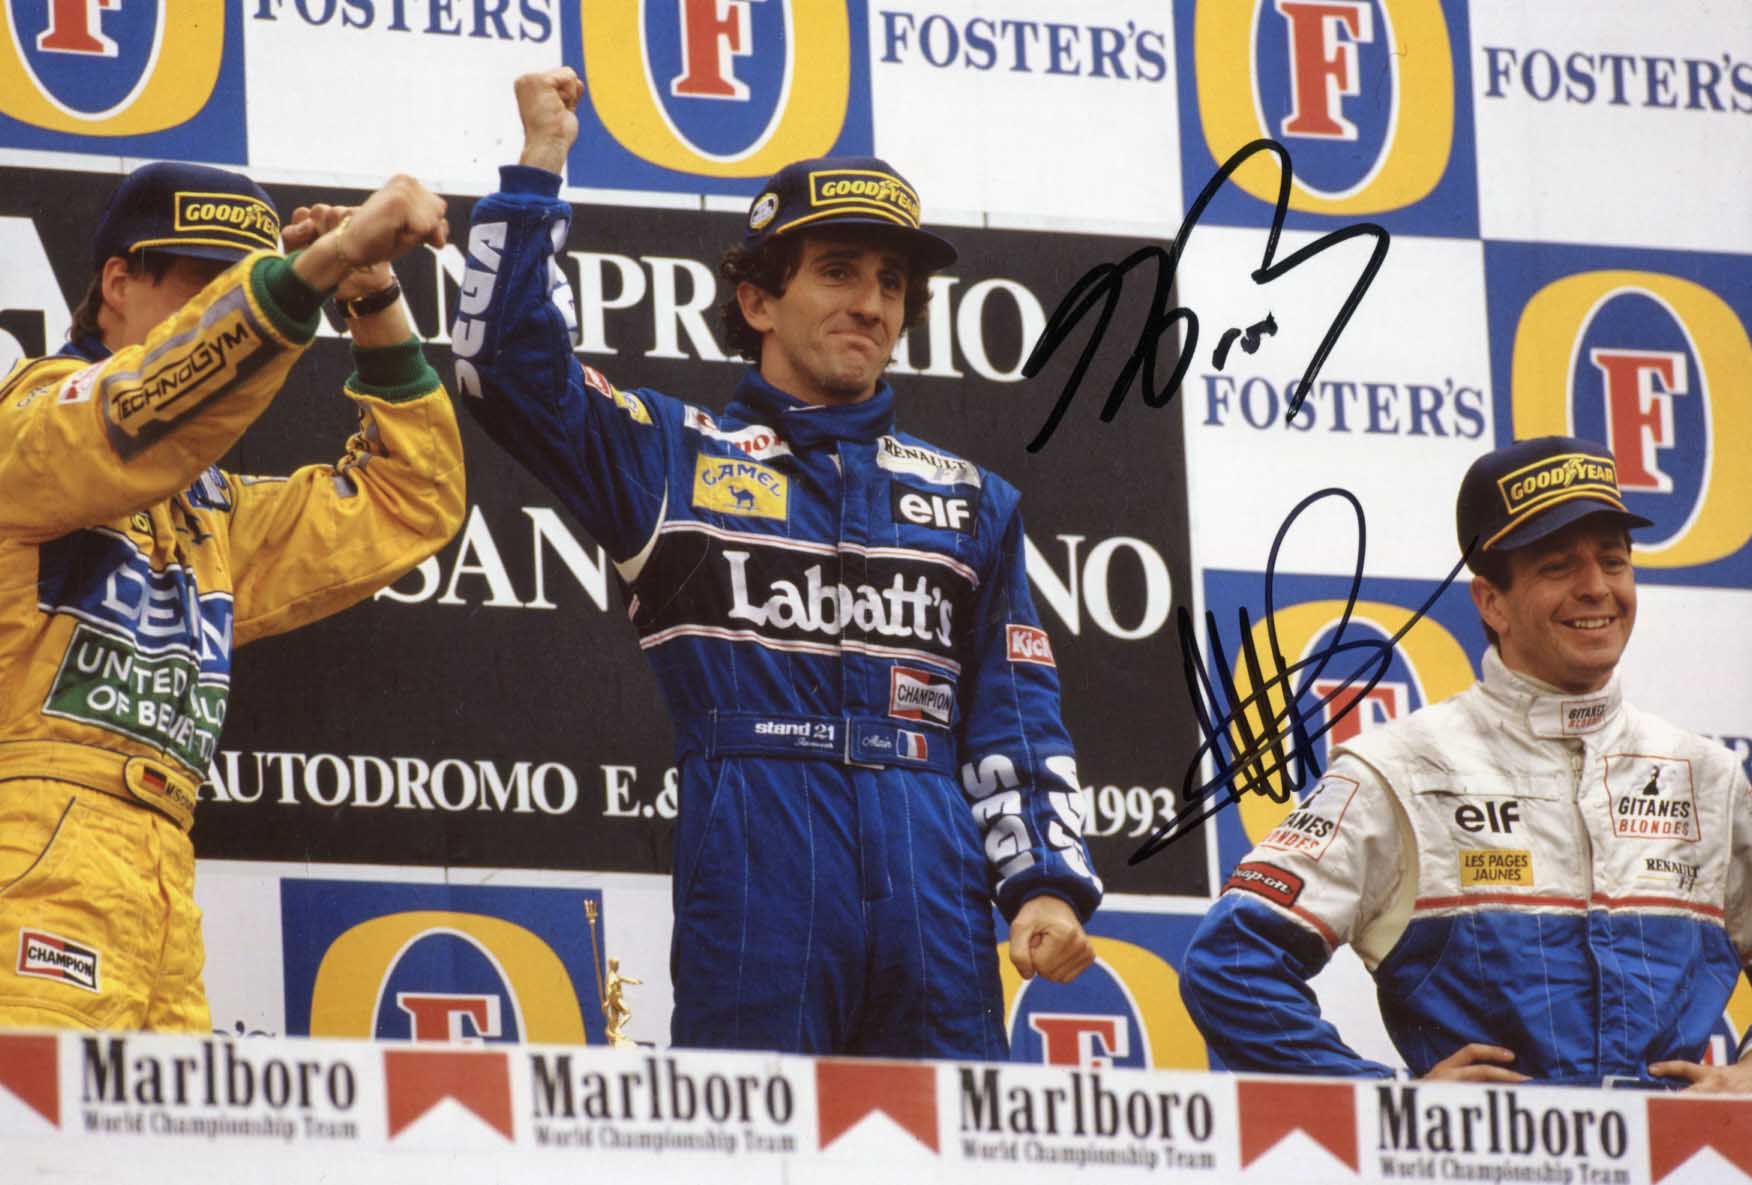 Martin &amp; Alain Brundle &amp; Prost Autograph Autogramm | ID 7831453466773